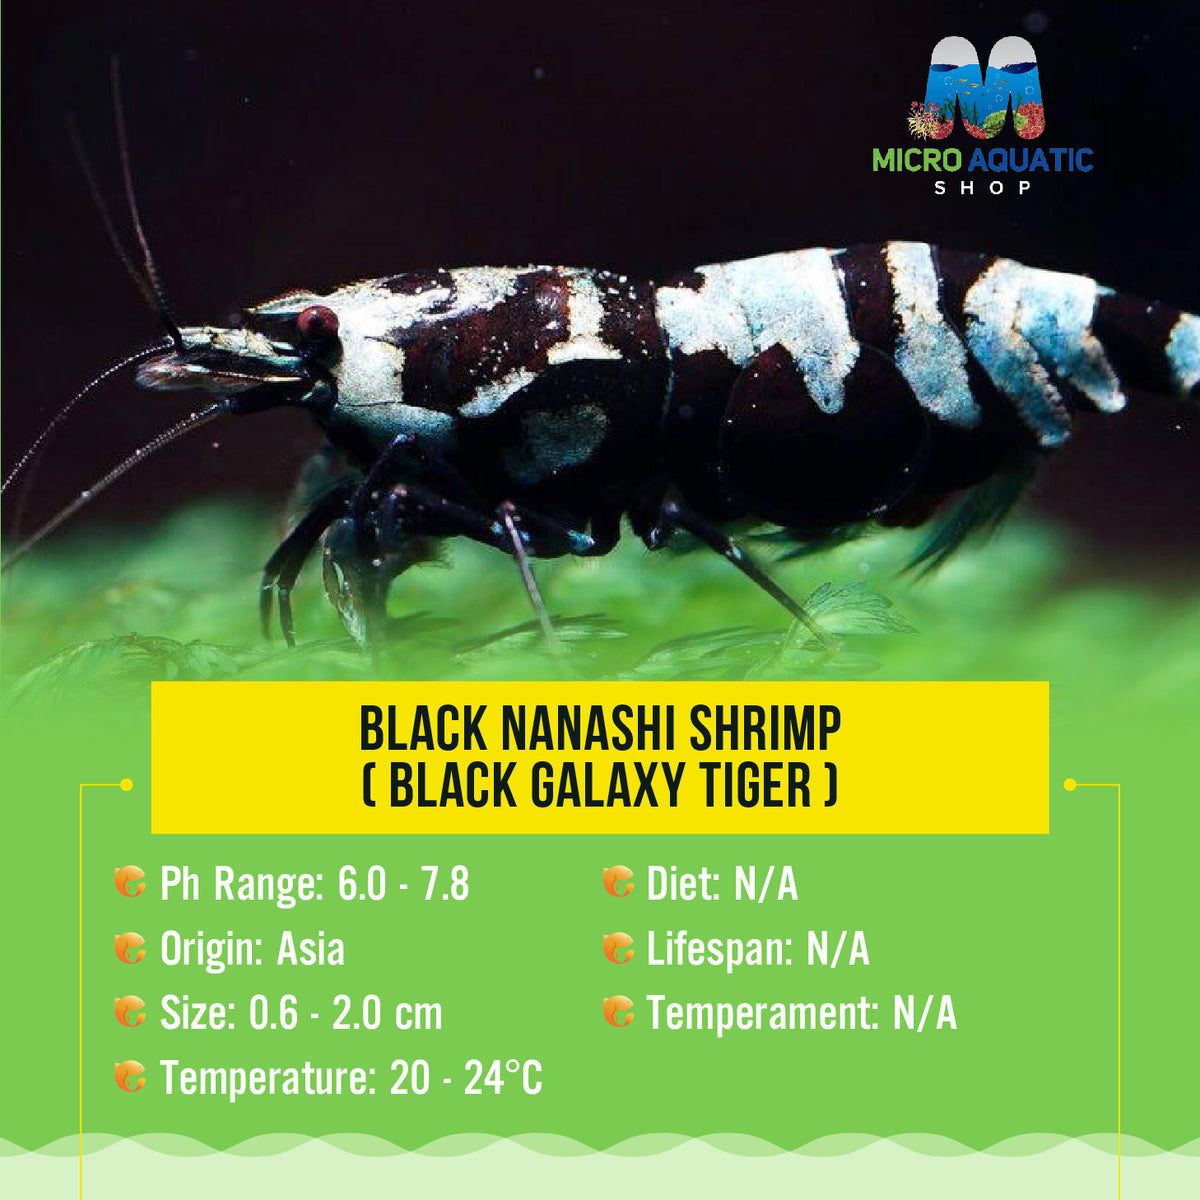 Buy 5 get 2 Black Nanashi Shrimp ( Black Galaxy Tiger )